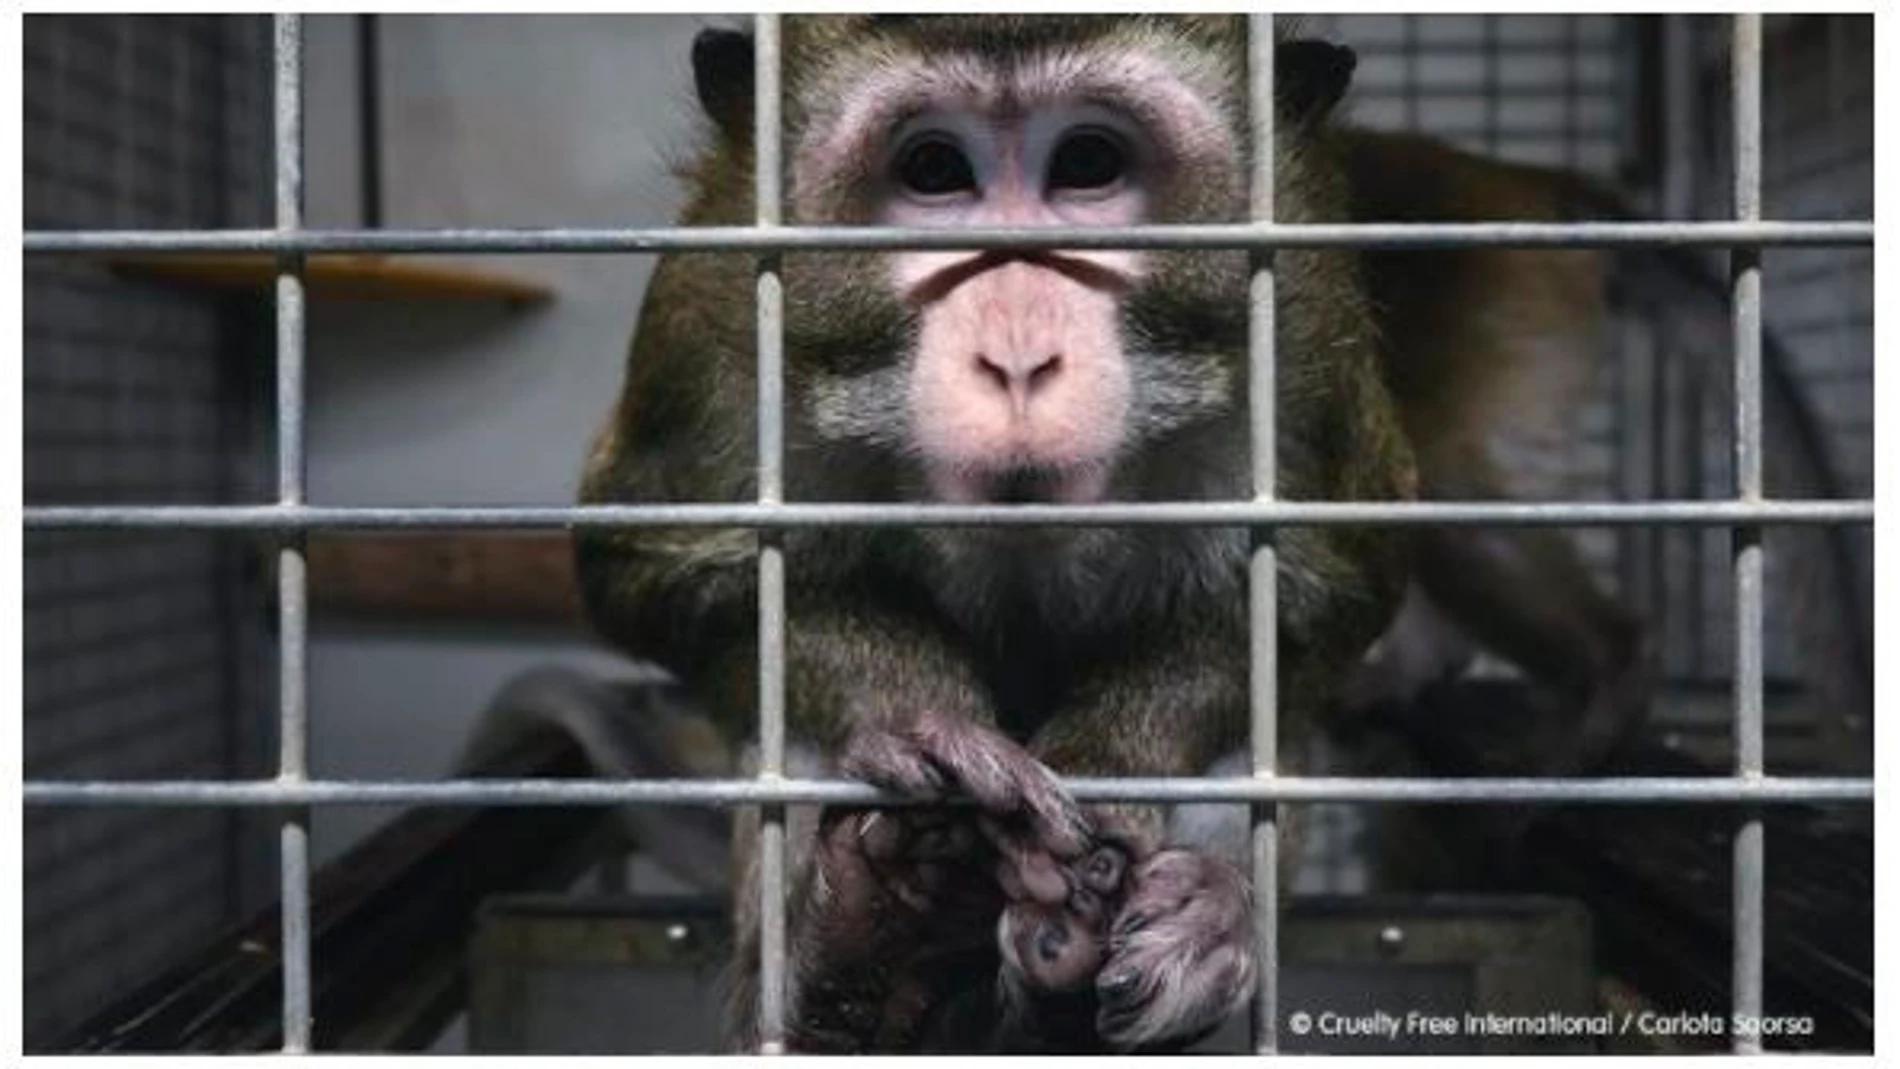 Imagen de unos de los animales del laboratorio cedida por la ONG Cruelty Free International y Carlota Saorsa